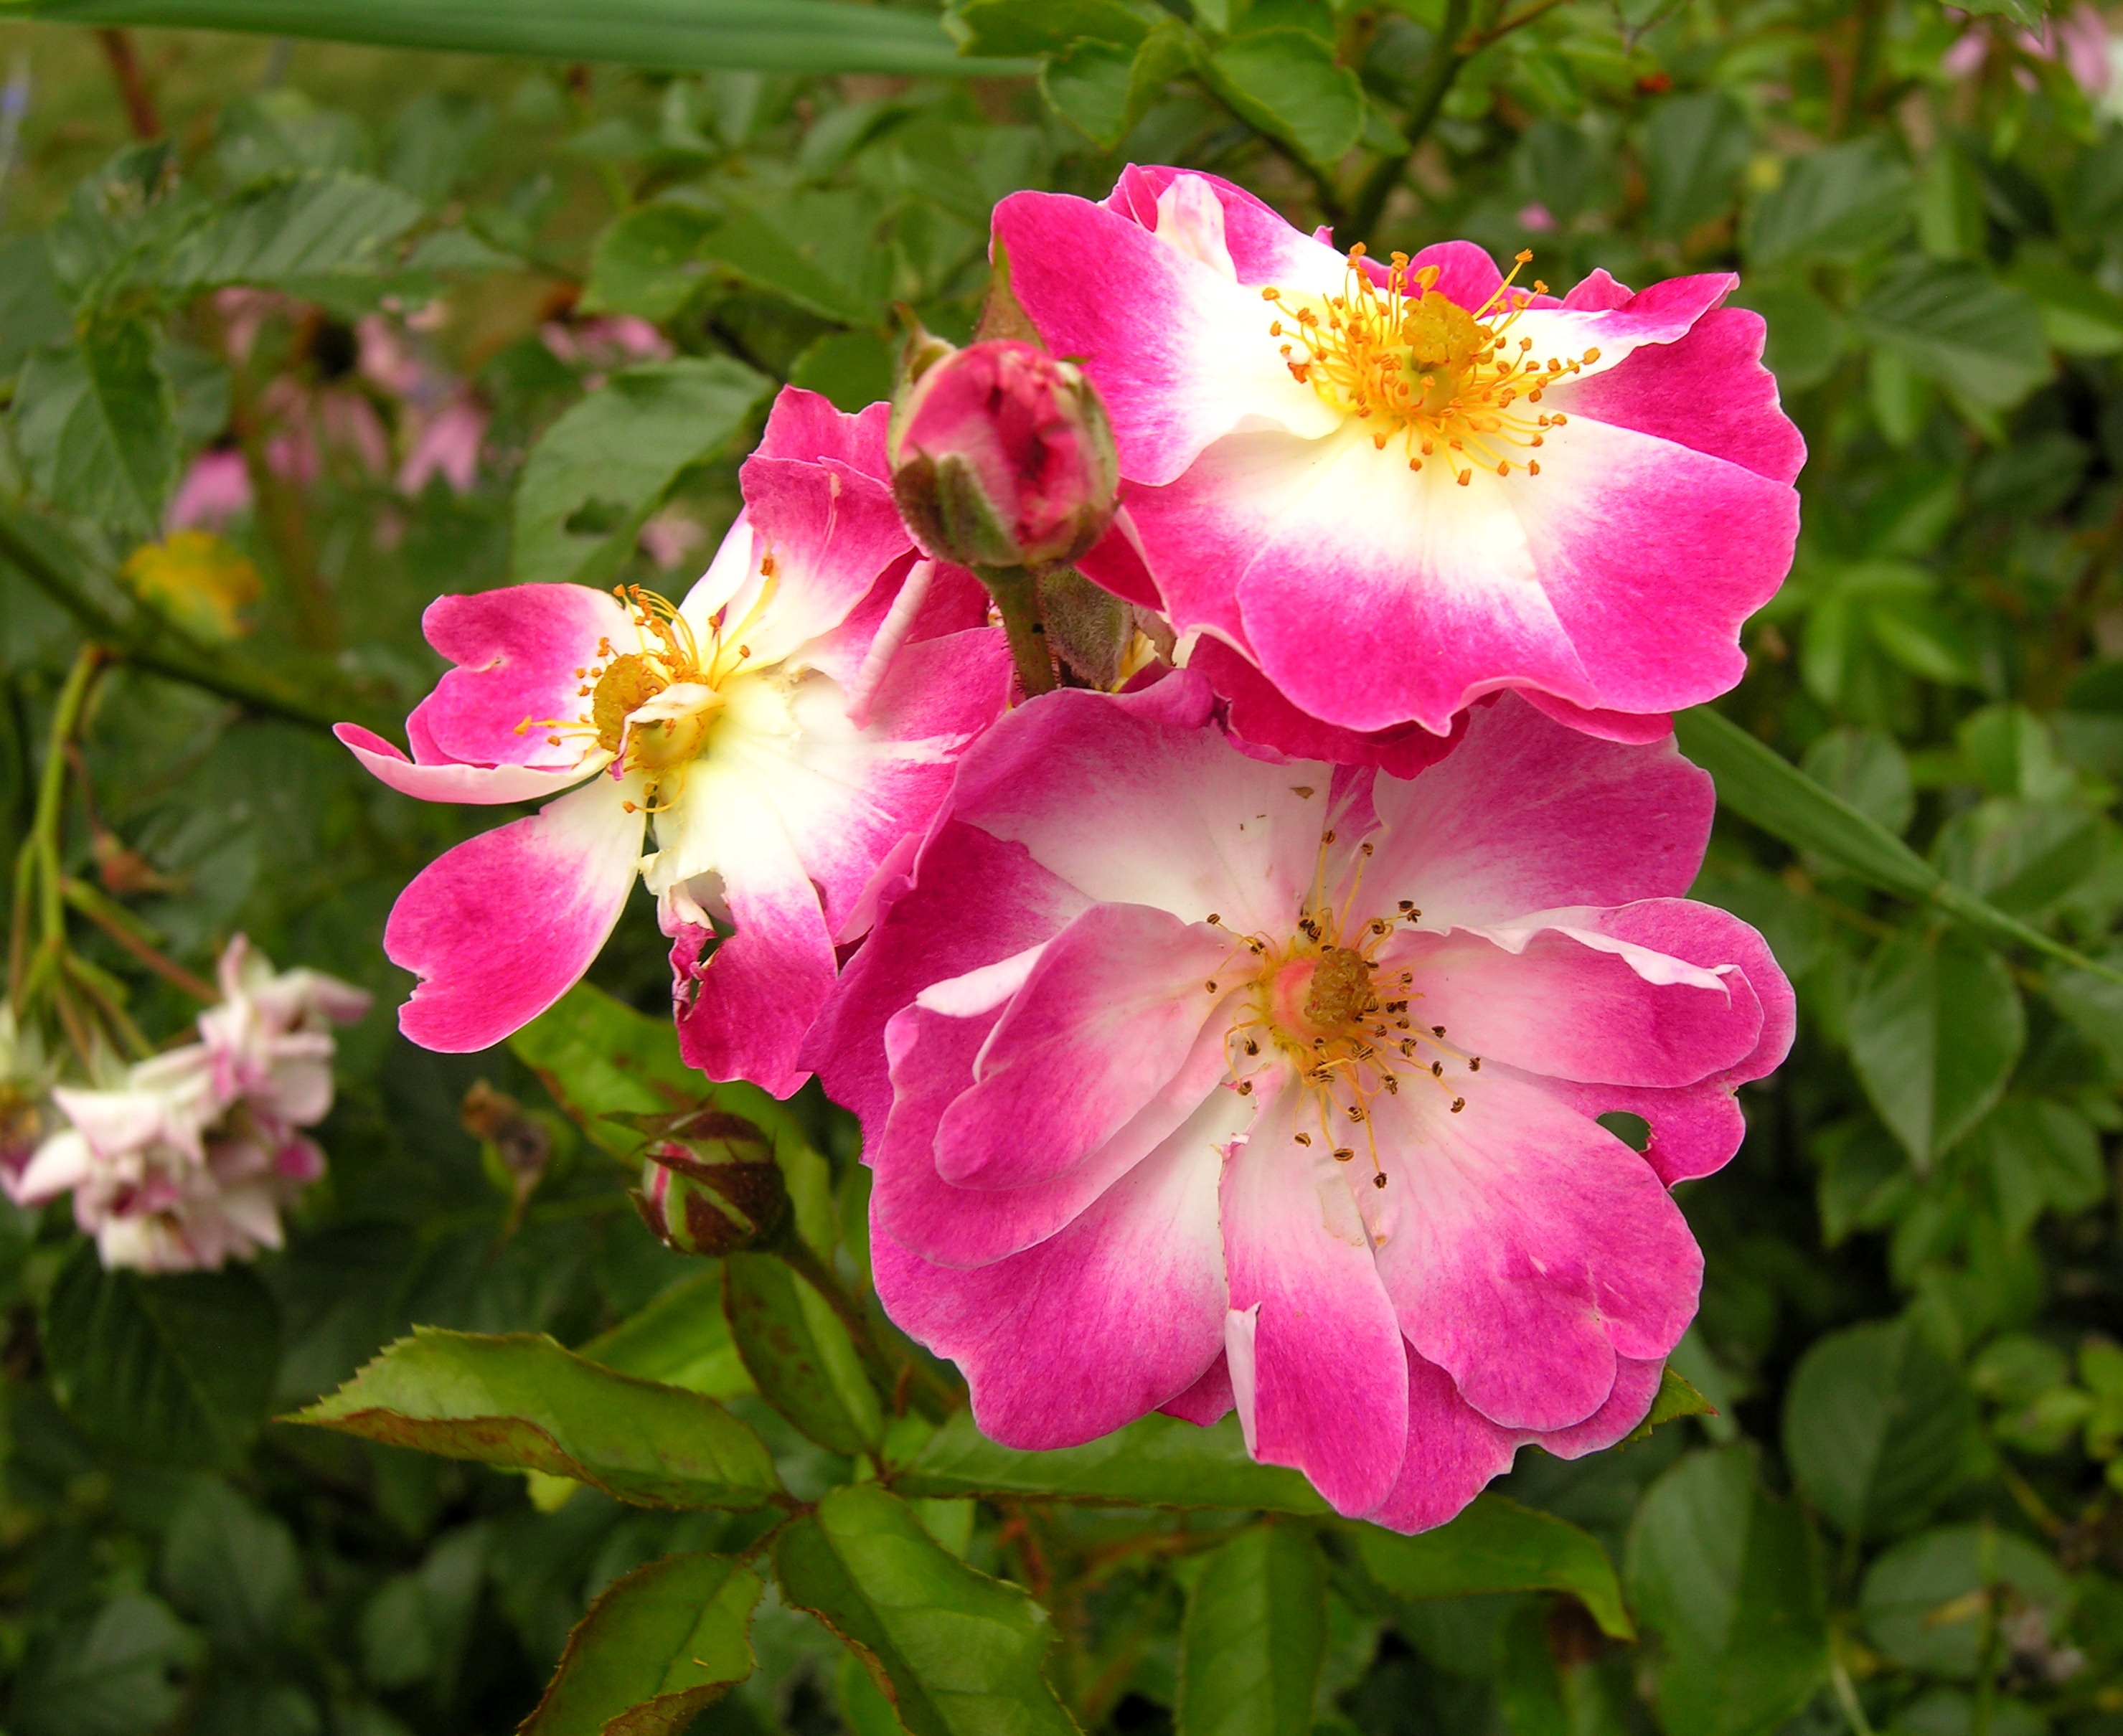 Greetings Rose in bloom